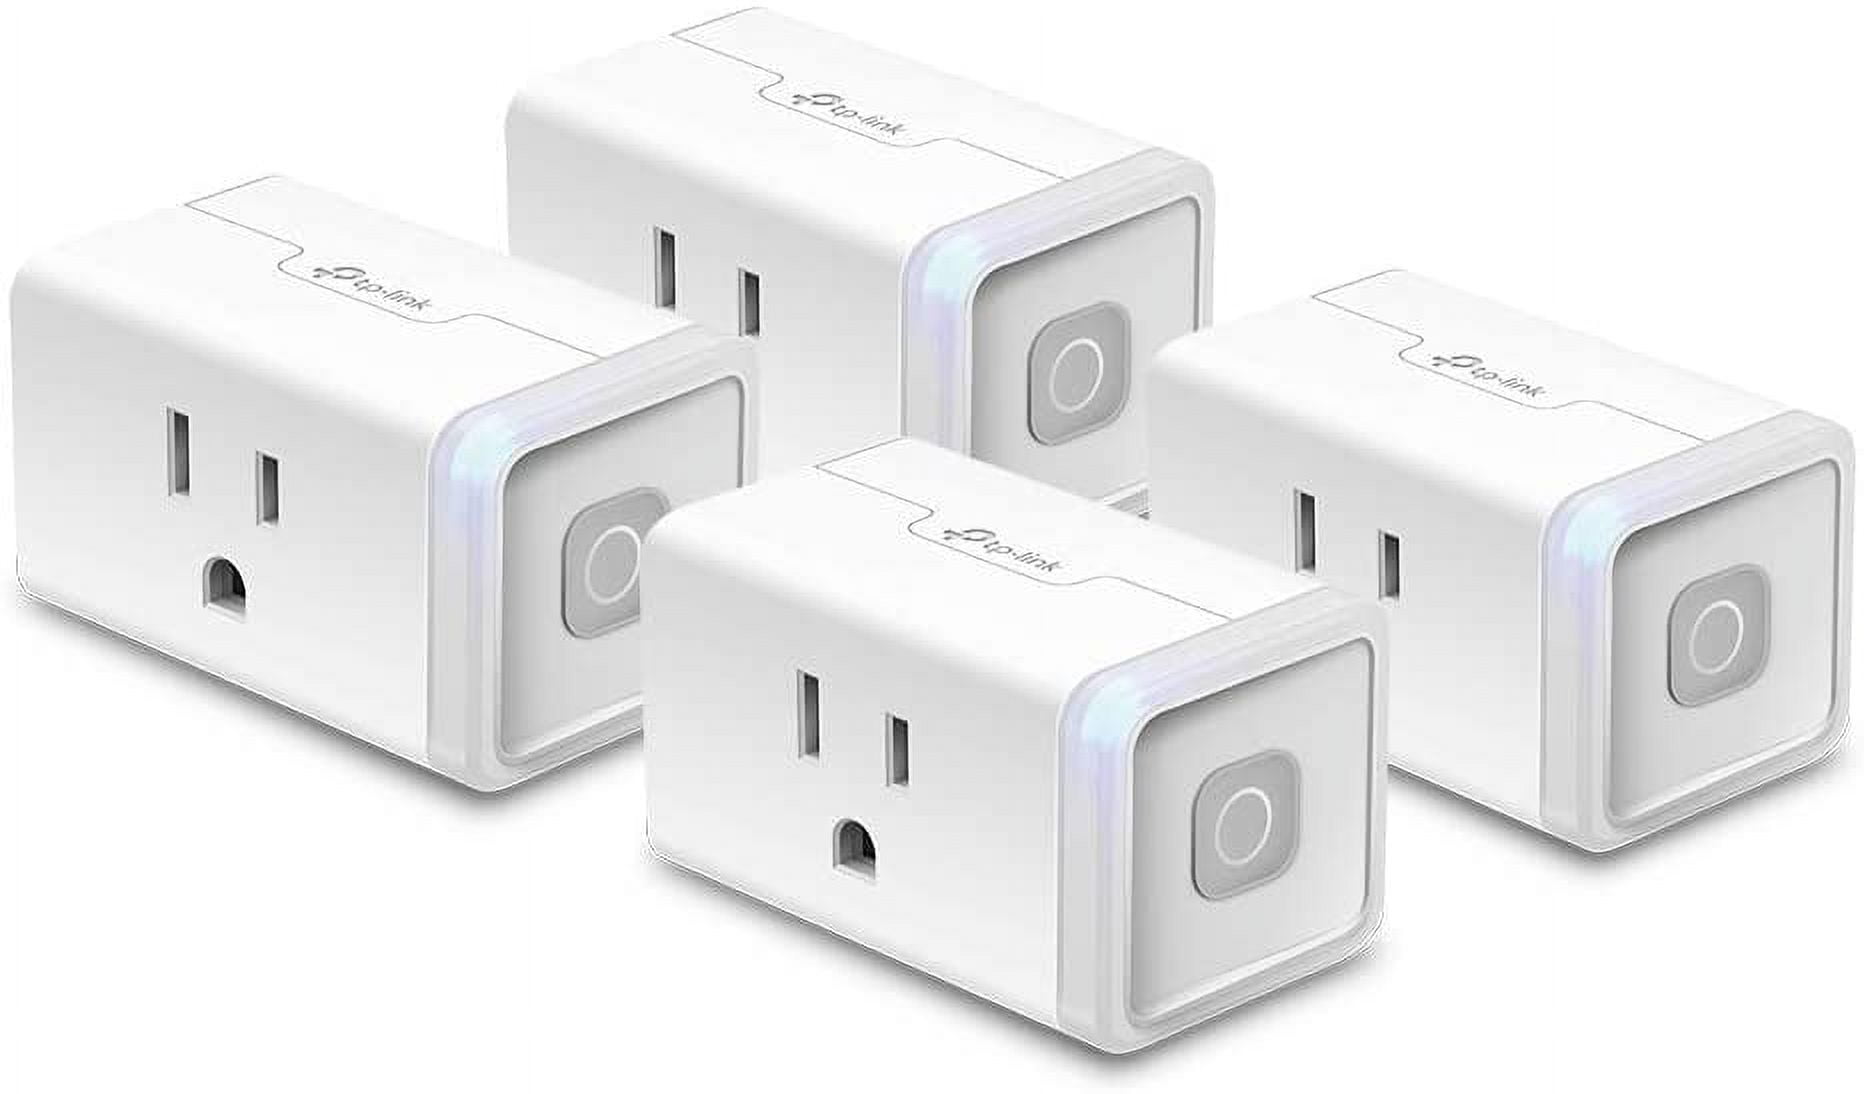 Kasa Smart WiFi Plug Mini 15A 4-Pack EP10P4